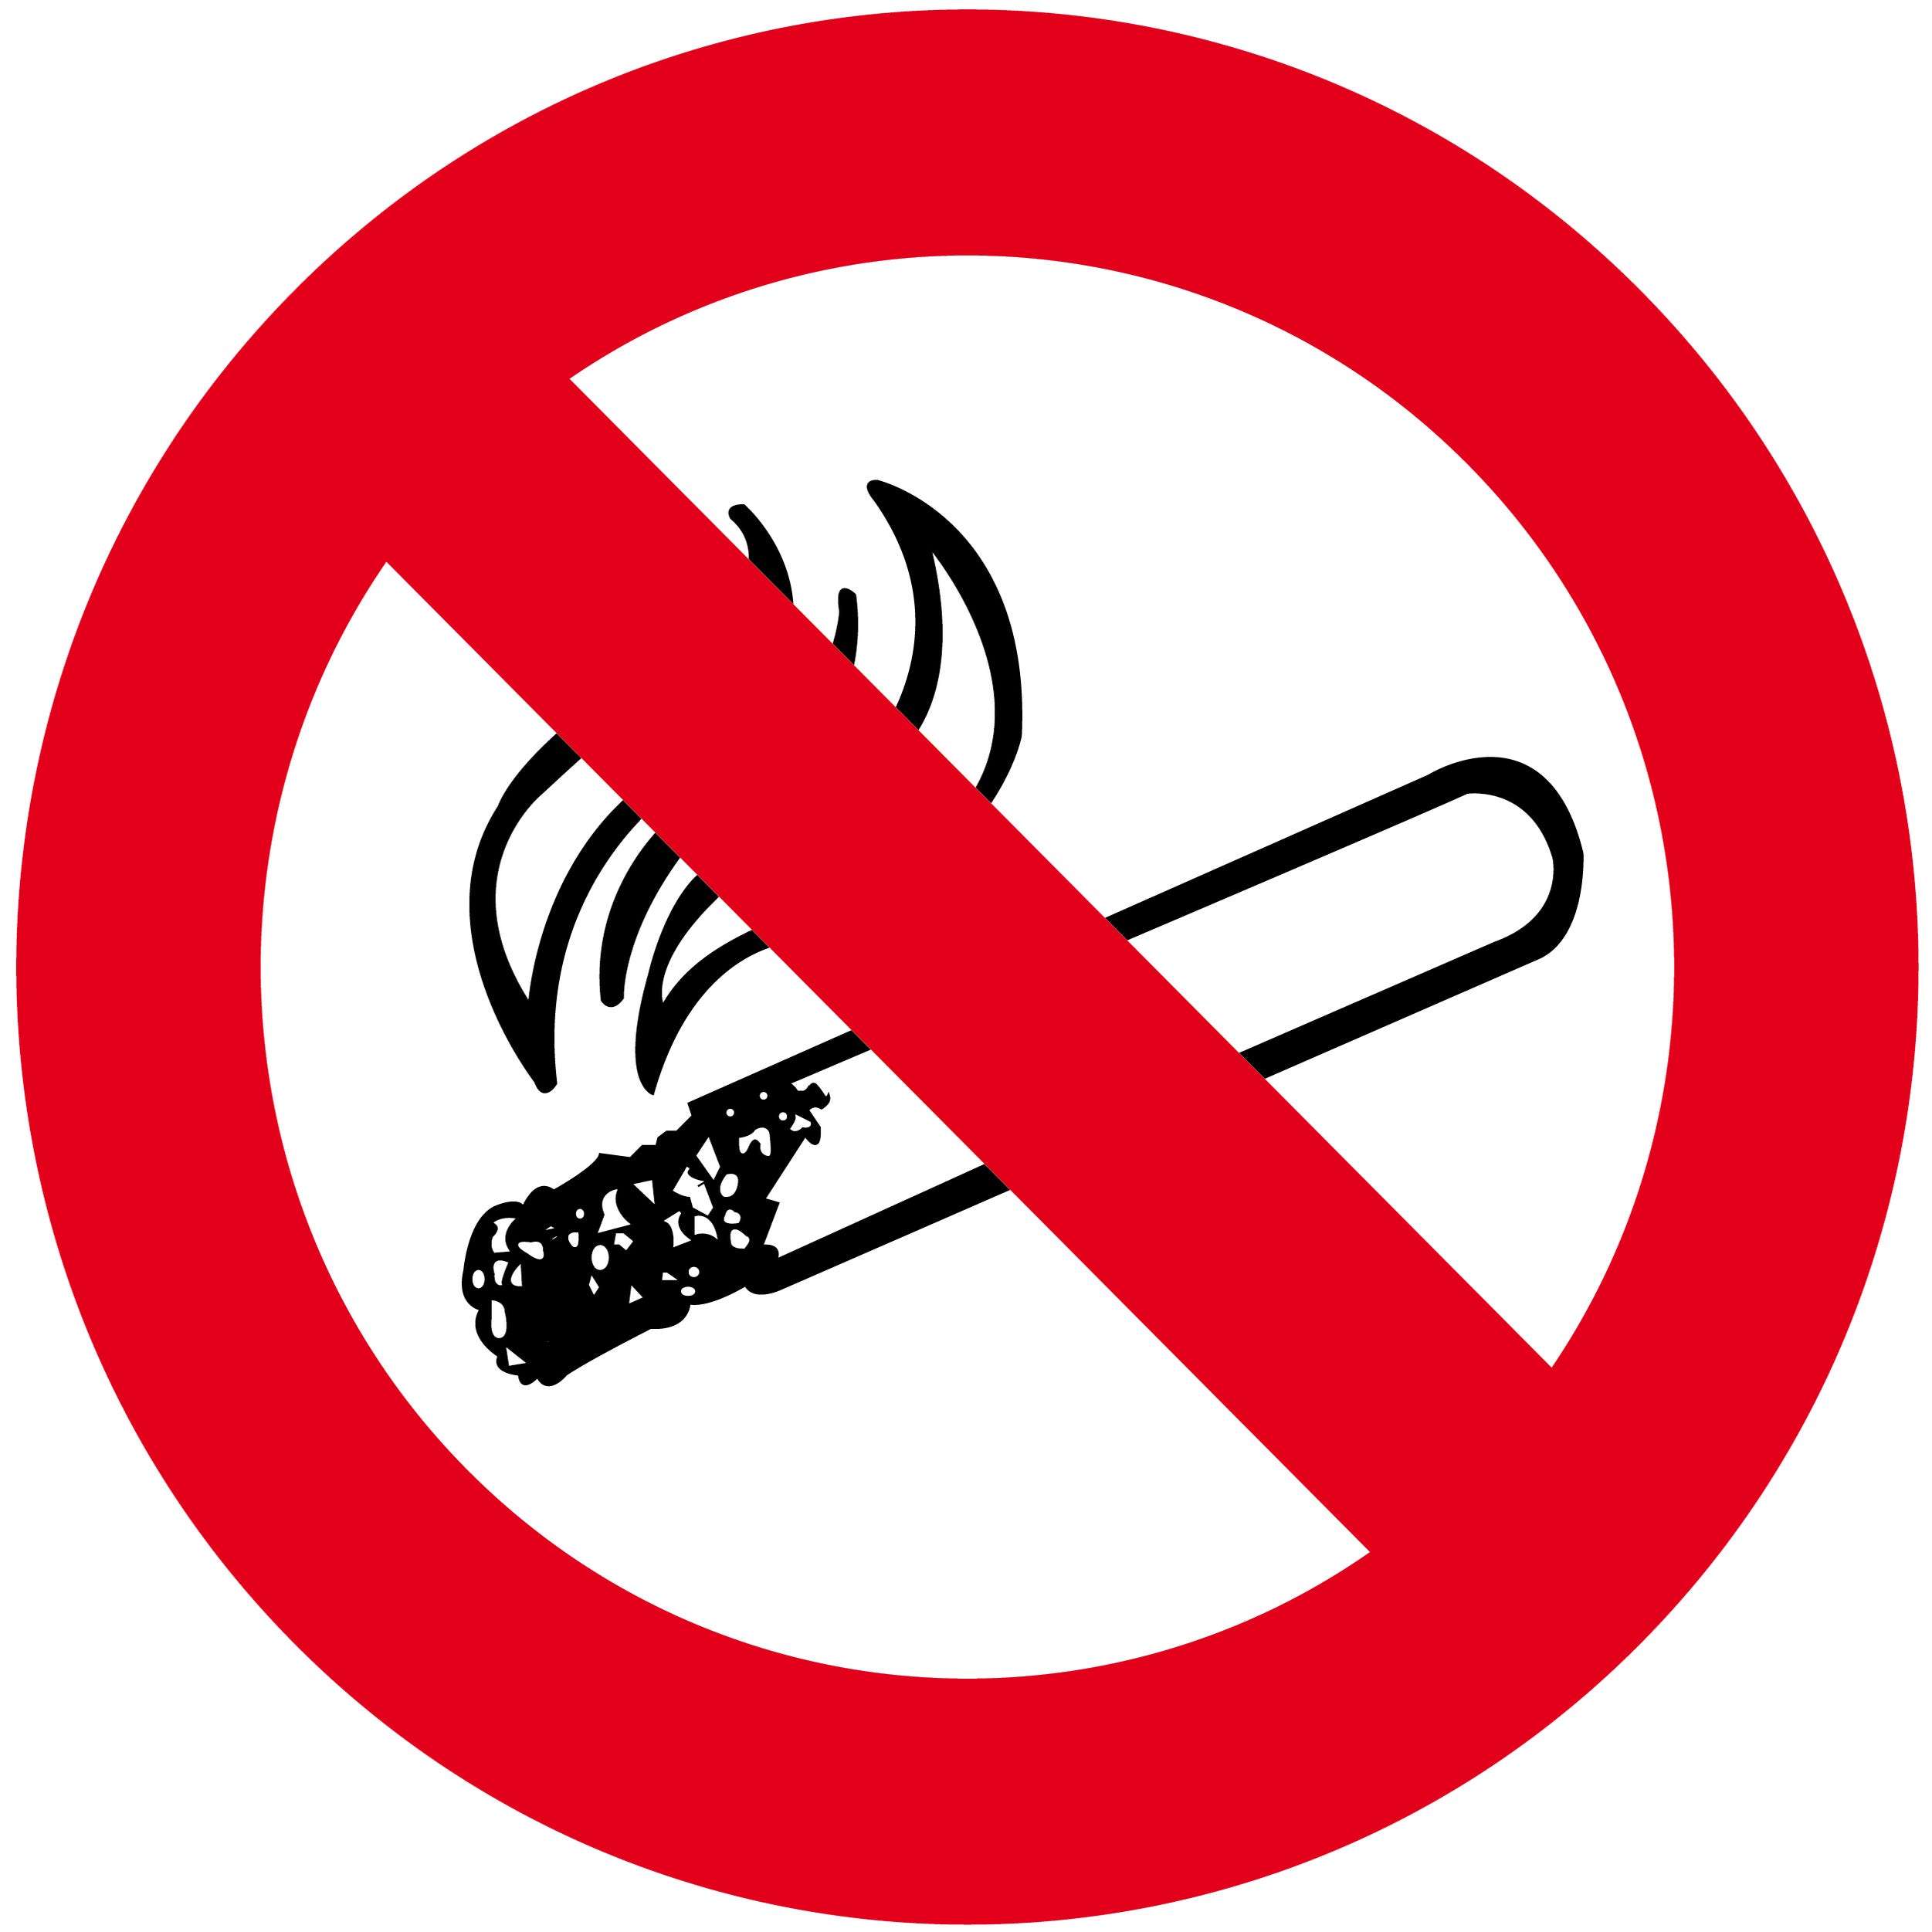 Cartel colgador Prohibido fumar, Espacio sin humo 21x29 cm A4